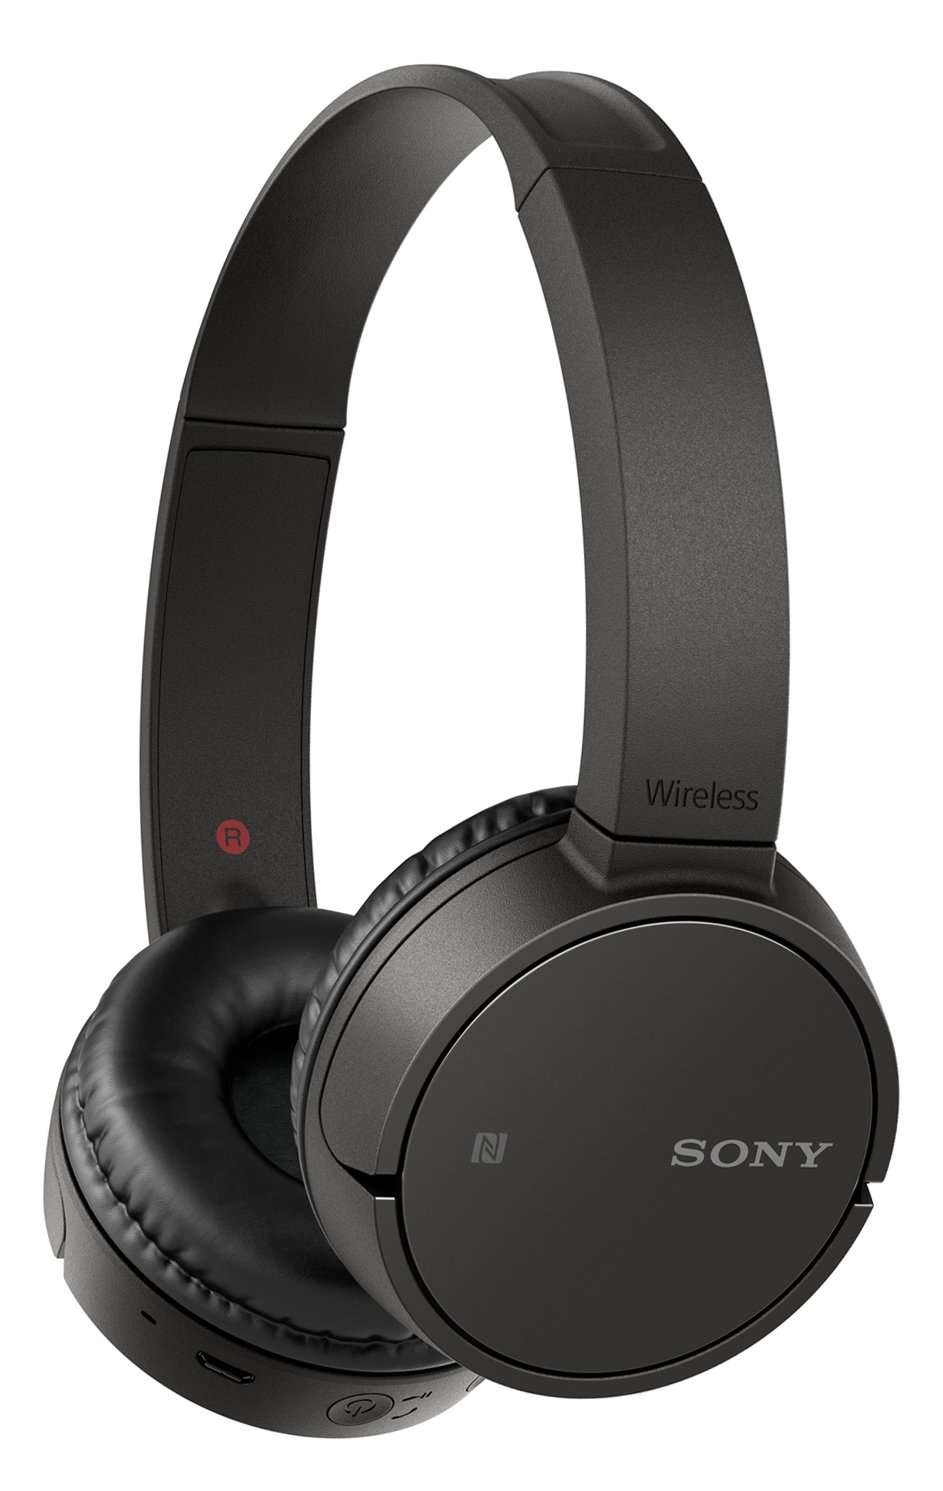 Sony WH-CH500 On-Ear Wireless Headphones - Black